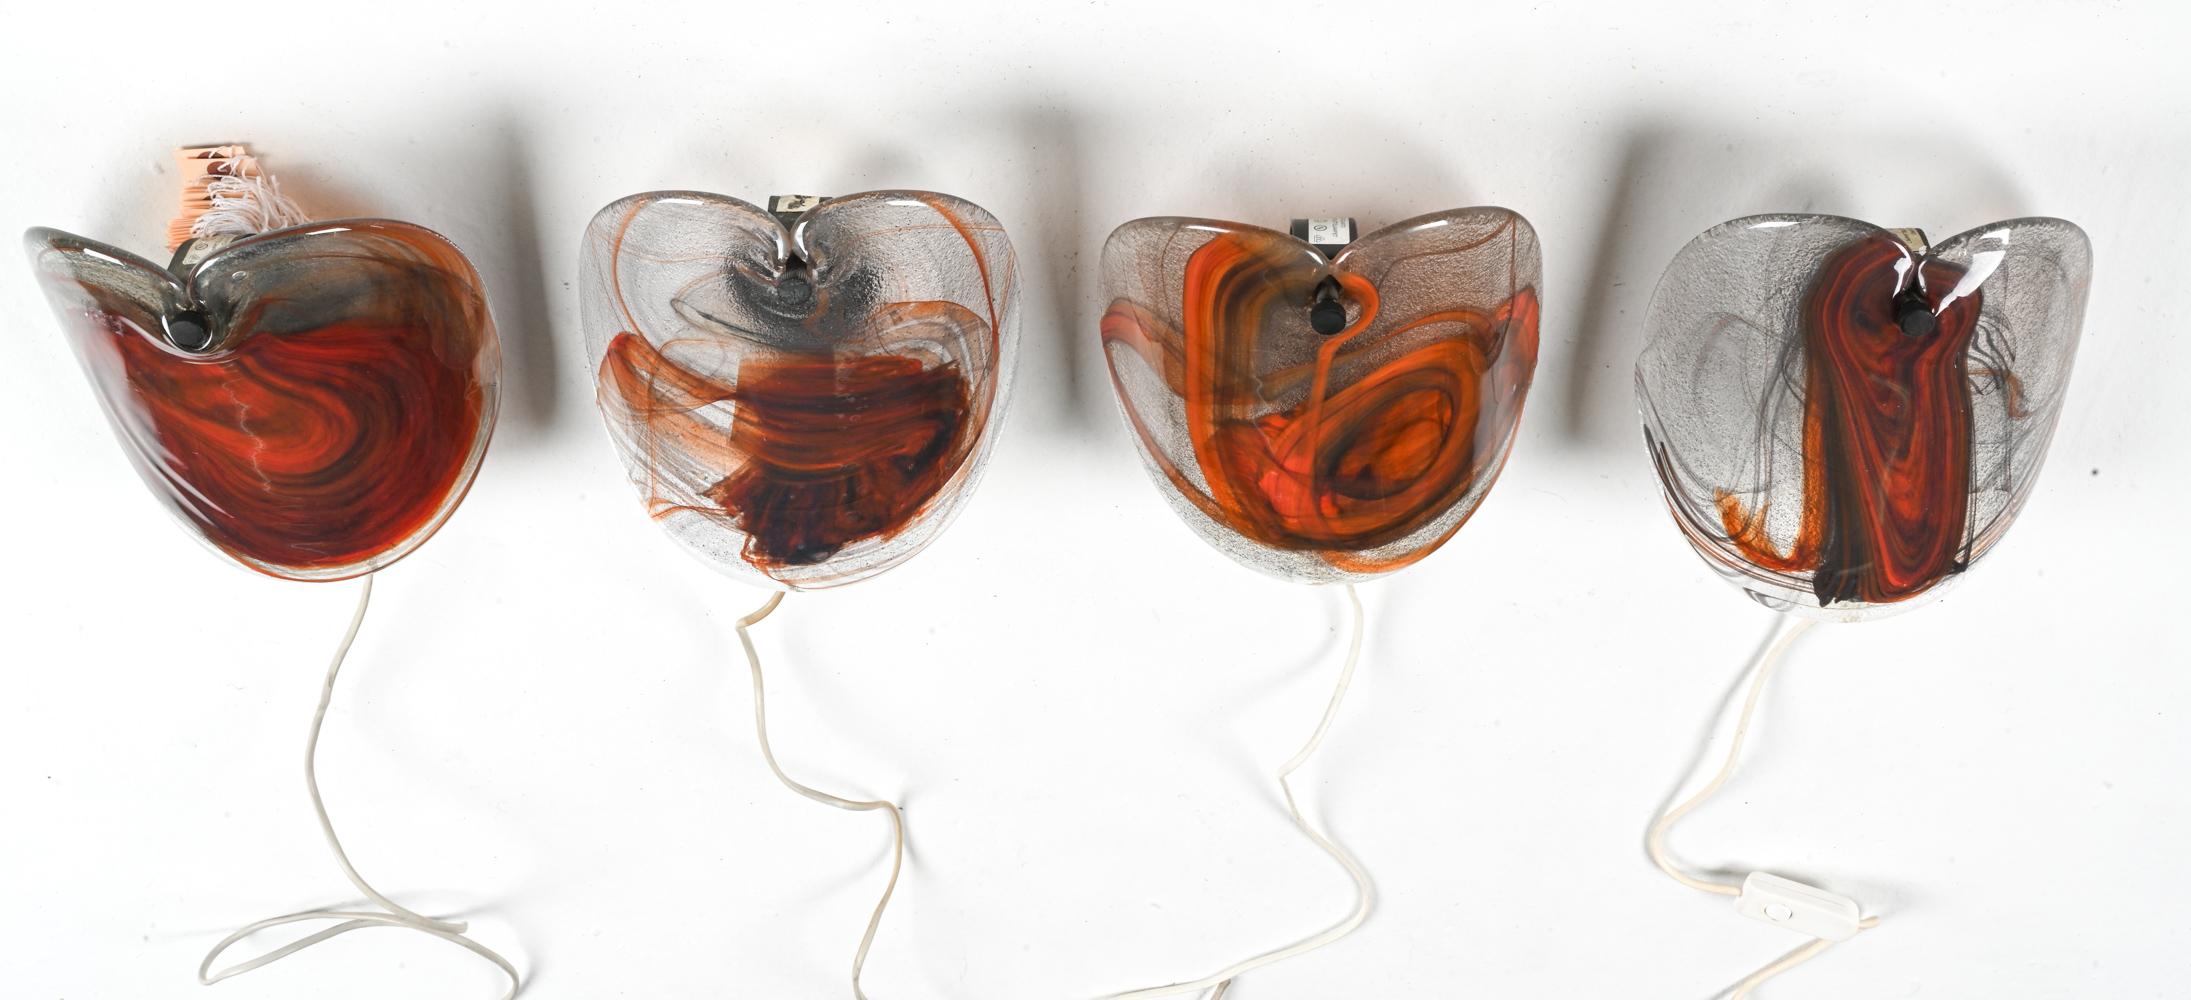 '4' Danish Modern Art Glass Sconces by Per Lütken for Holmegaard, c. 1970's For Sale 4